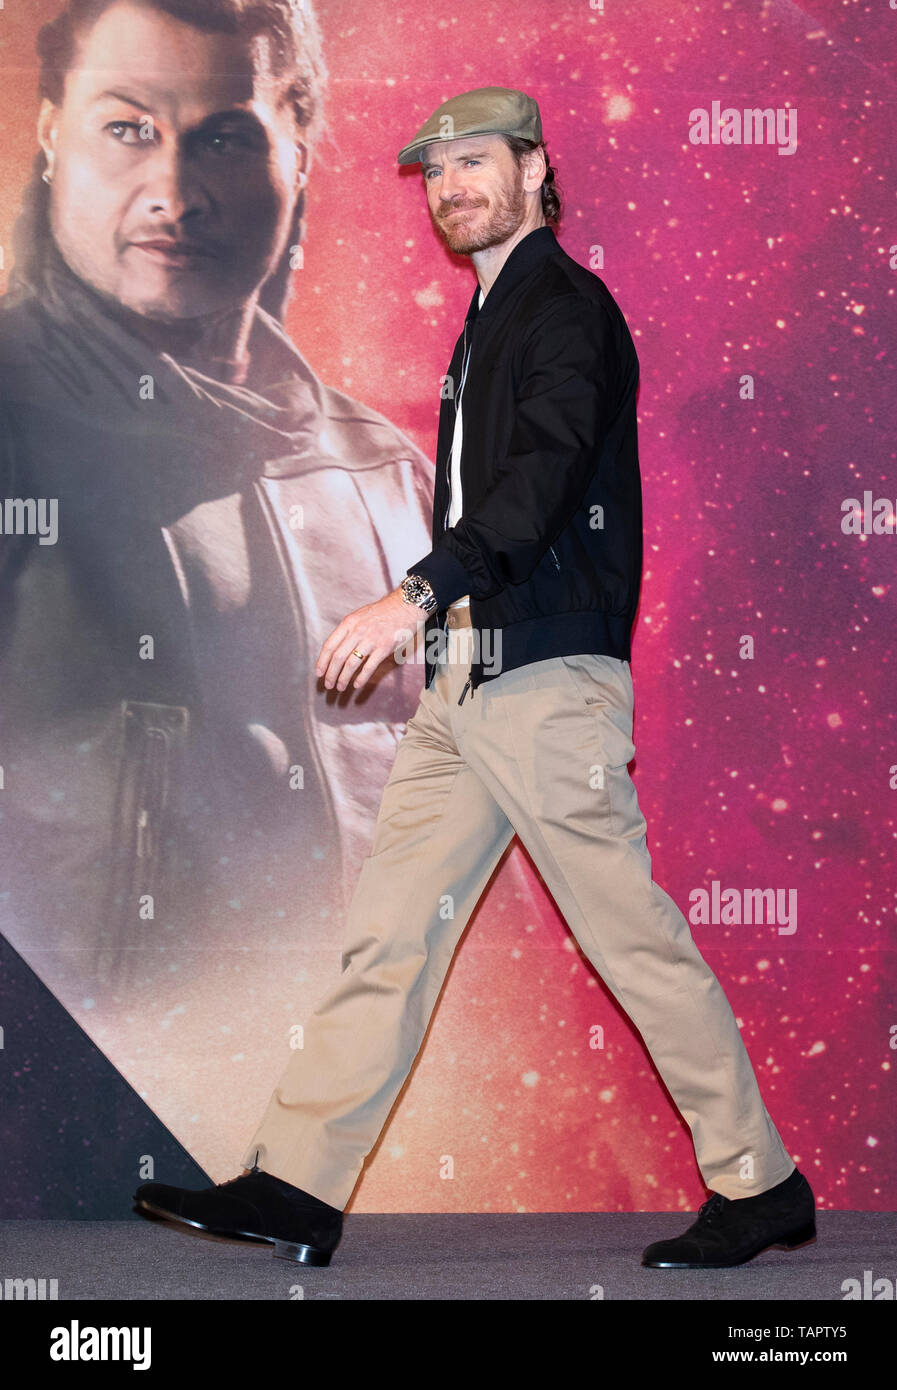 (190527) - Seoul, 27. Mai 2019 (Xinhua) - der Schauspieler Michael Fassbender nimmt an einer Pressekonferenz der Film "X-Men: Dark Phoenix" in Seoul, Südkorea, 27. Mai 2019 zu fördern. Der Film wird in Südkorea am 5. Juni freigegeben werden. (Xinhua / Lee Sang-ho) Stockfoto